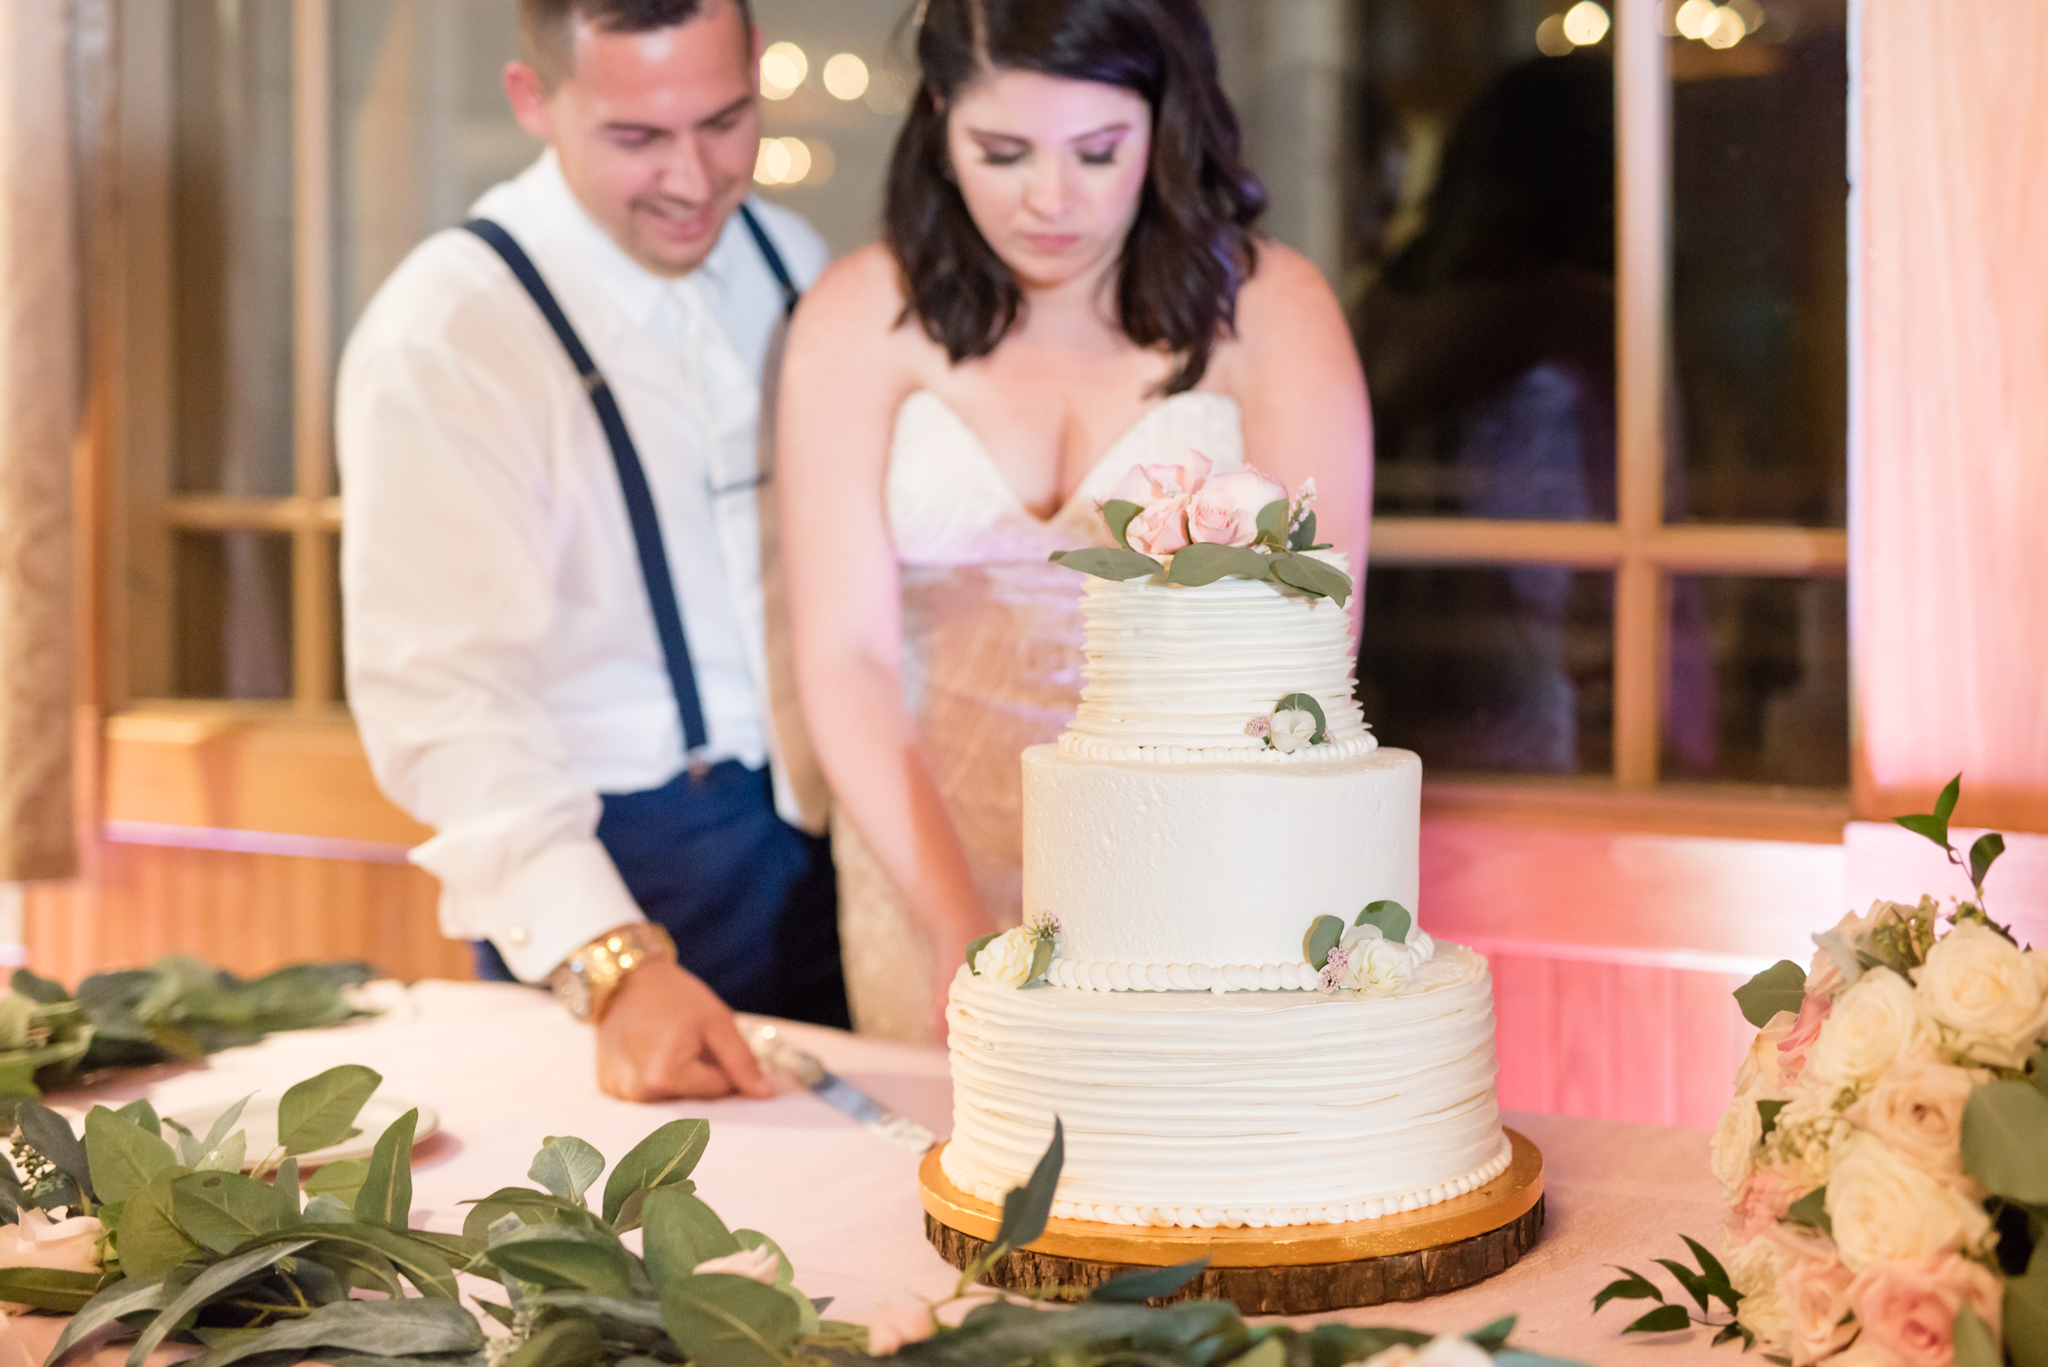 Cake cutting at wedding.